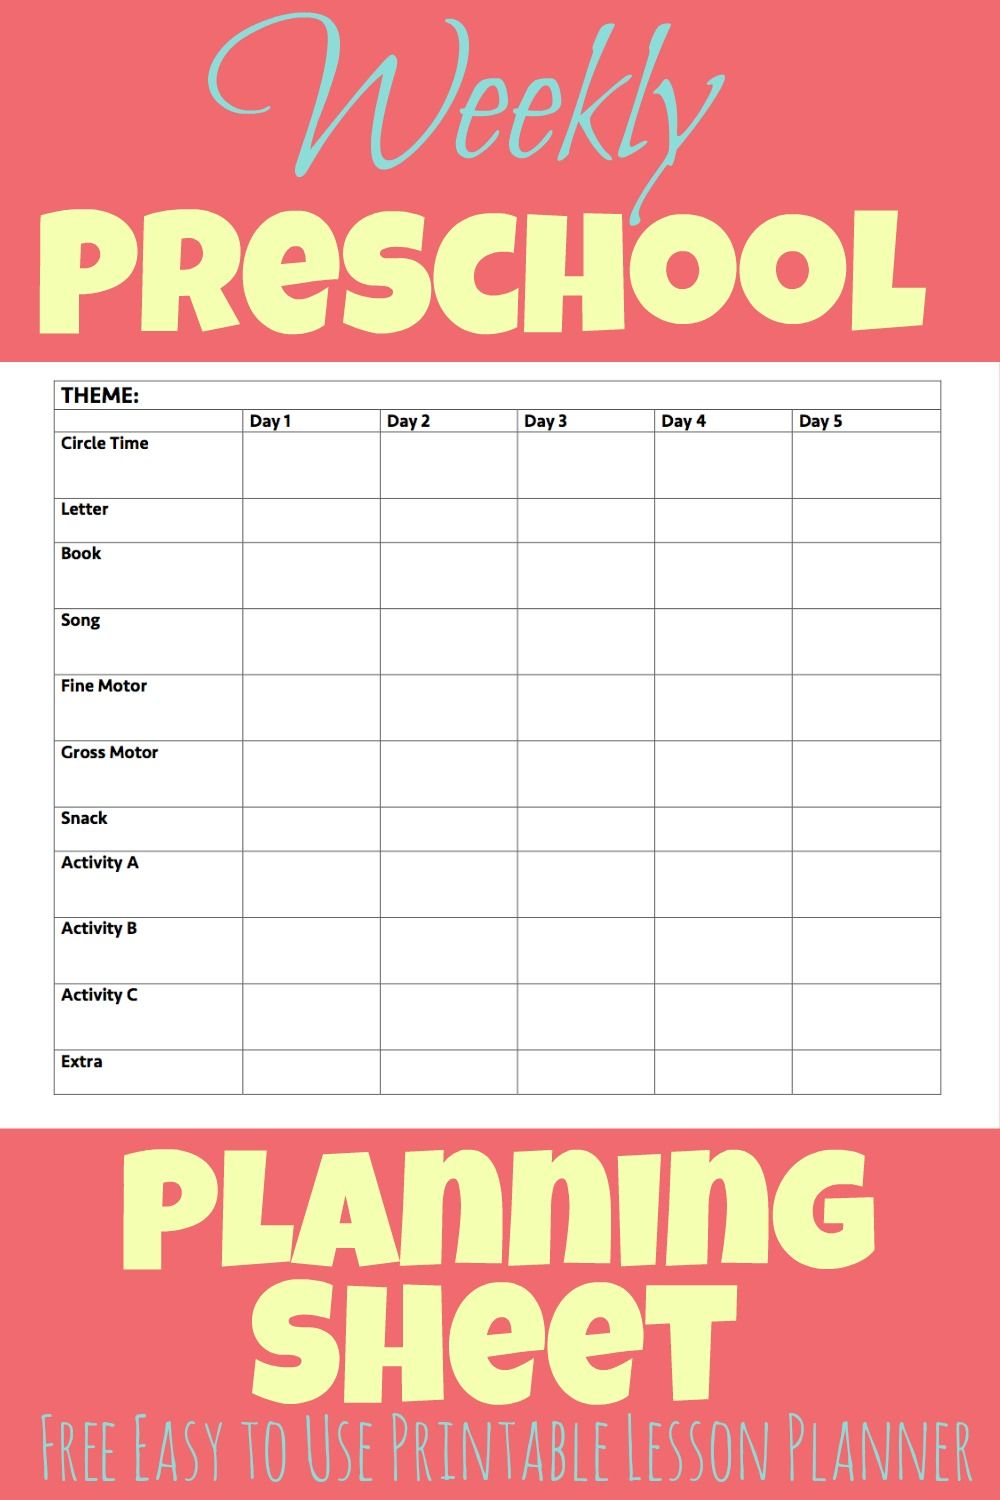 Printable Preschool Week Planning Sheet - More Excellent Me